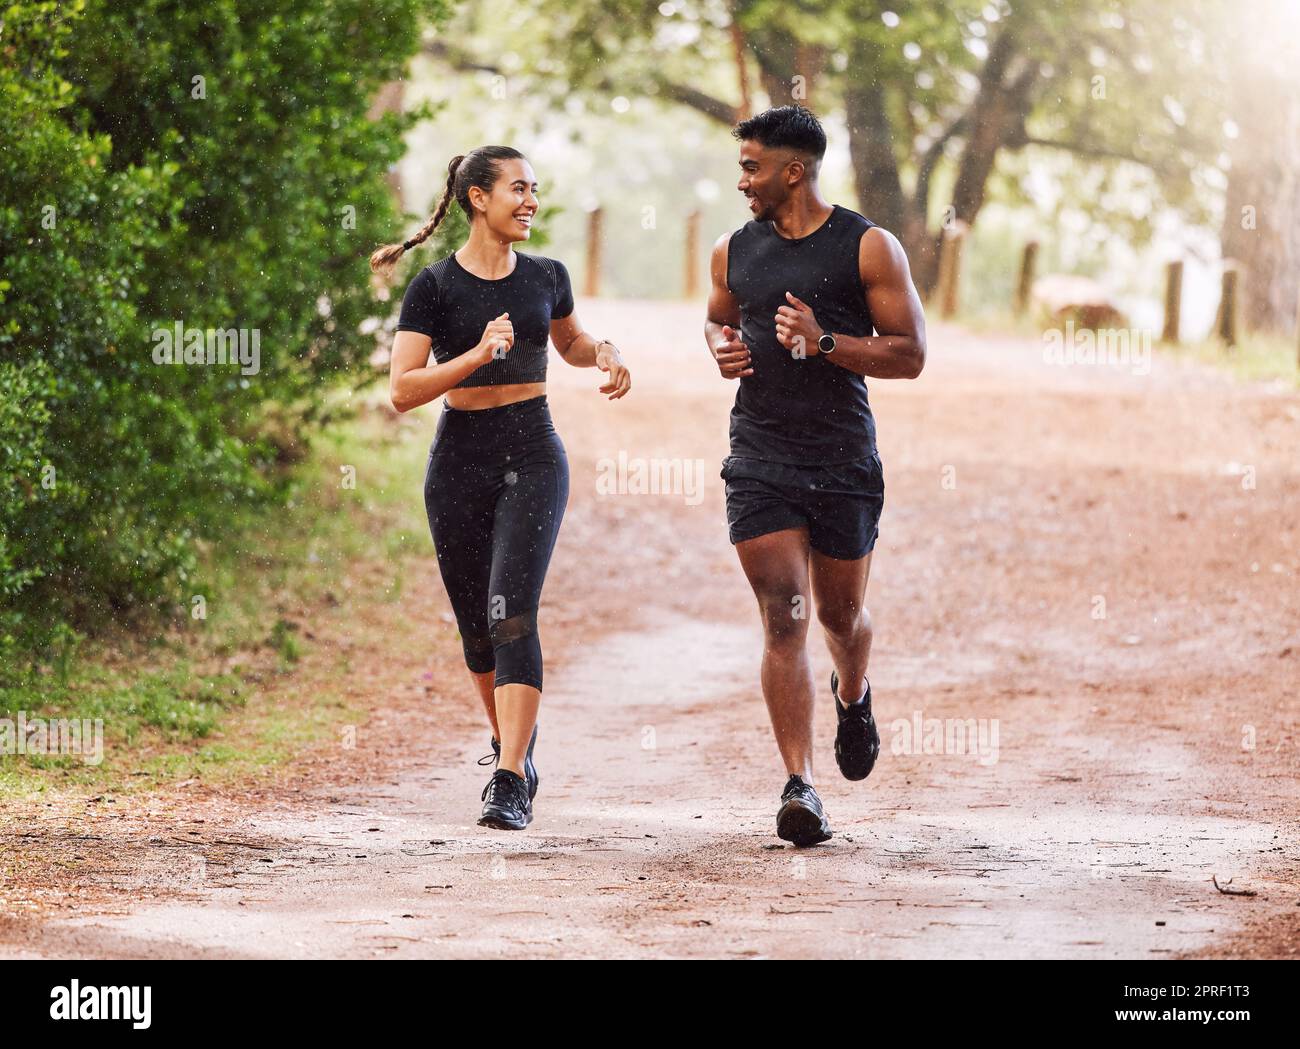 Fitness, esercizio fisico e coppia felice che corre o fa jogging su un sentiero nella foresta o su un parco all'aperto. Uomo e donna sportivi e sorridenti che mantengono attiva e in forma durante l'allenamento e l'allenamento Foto Stock